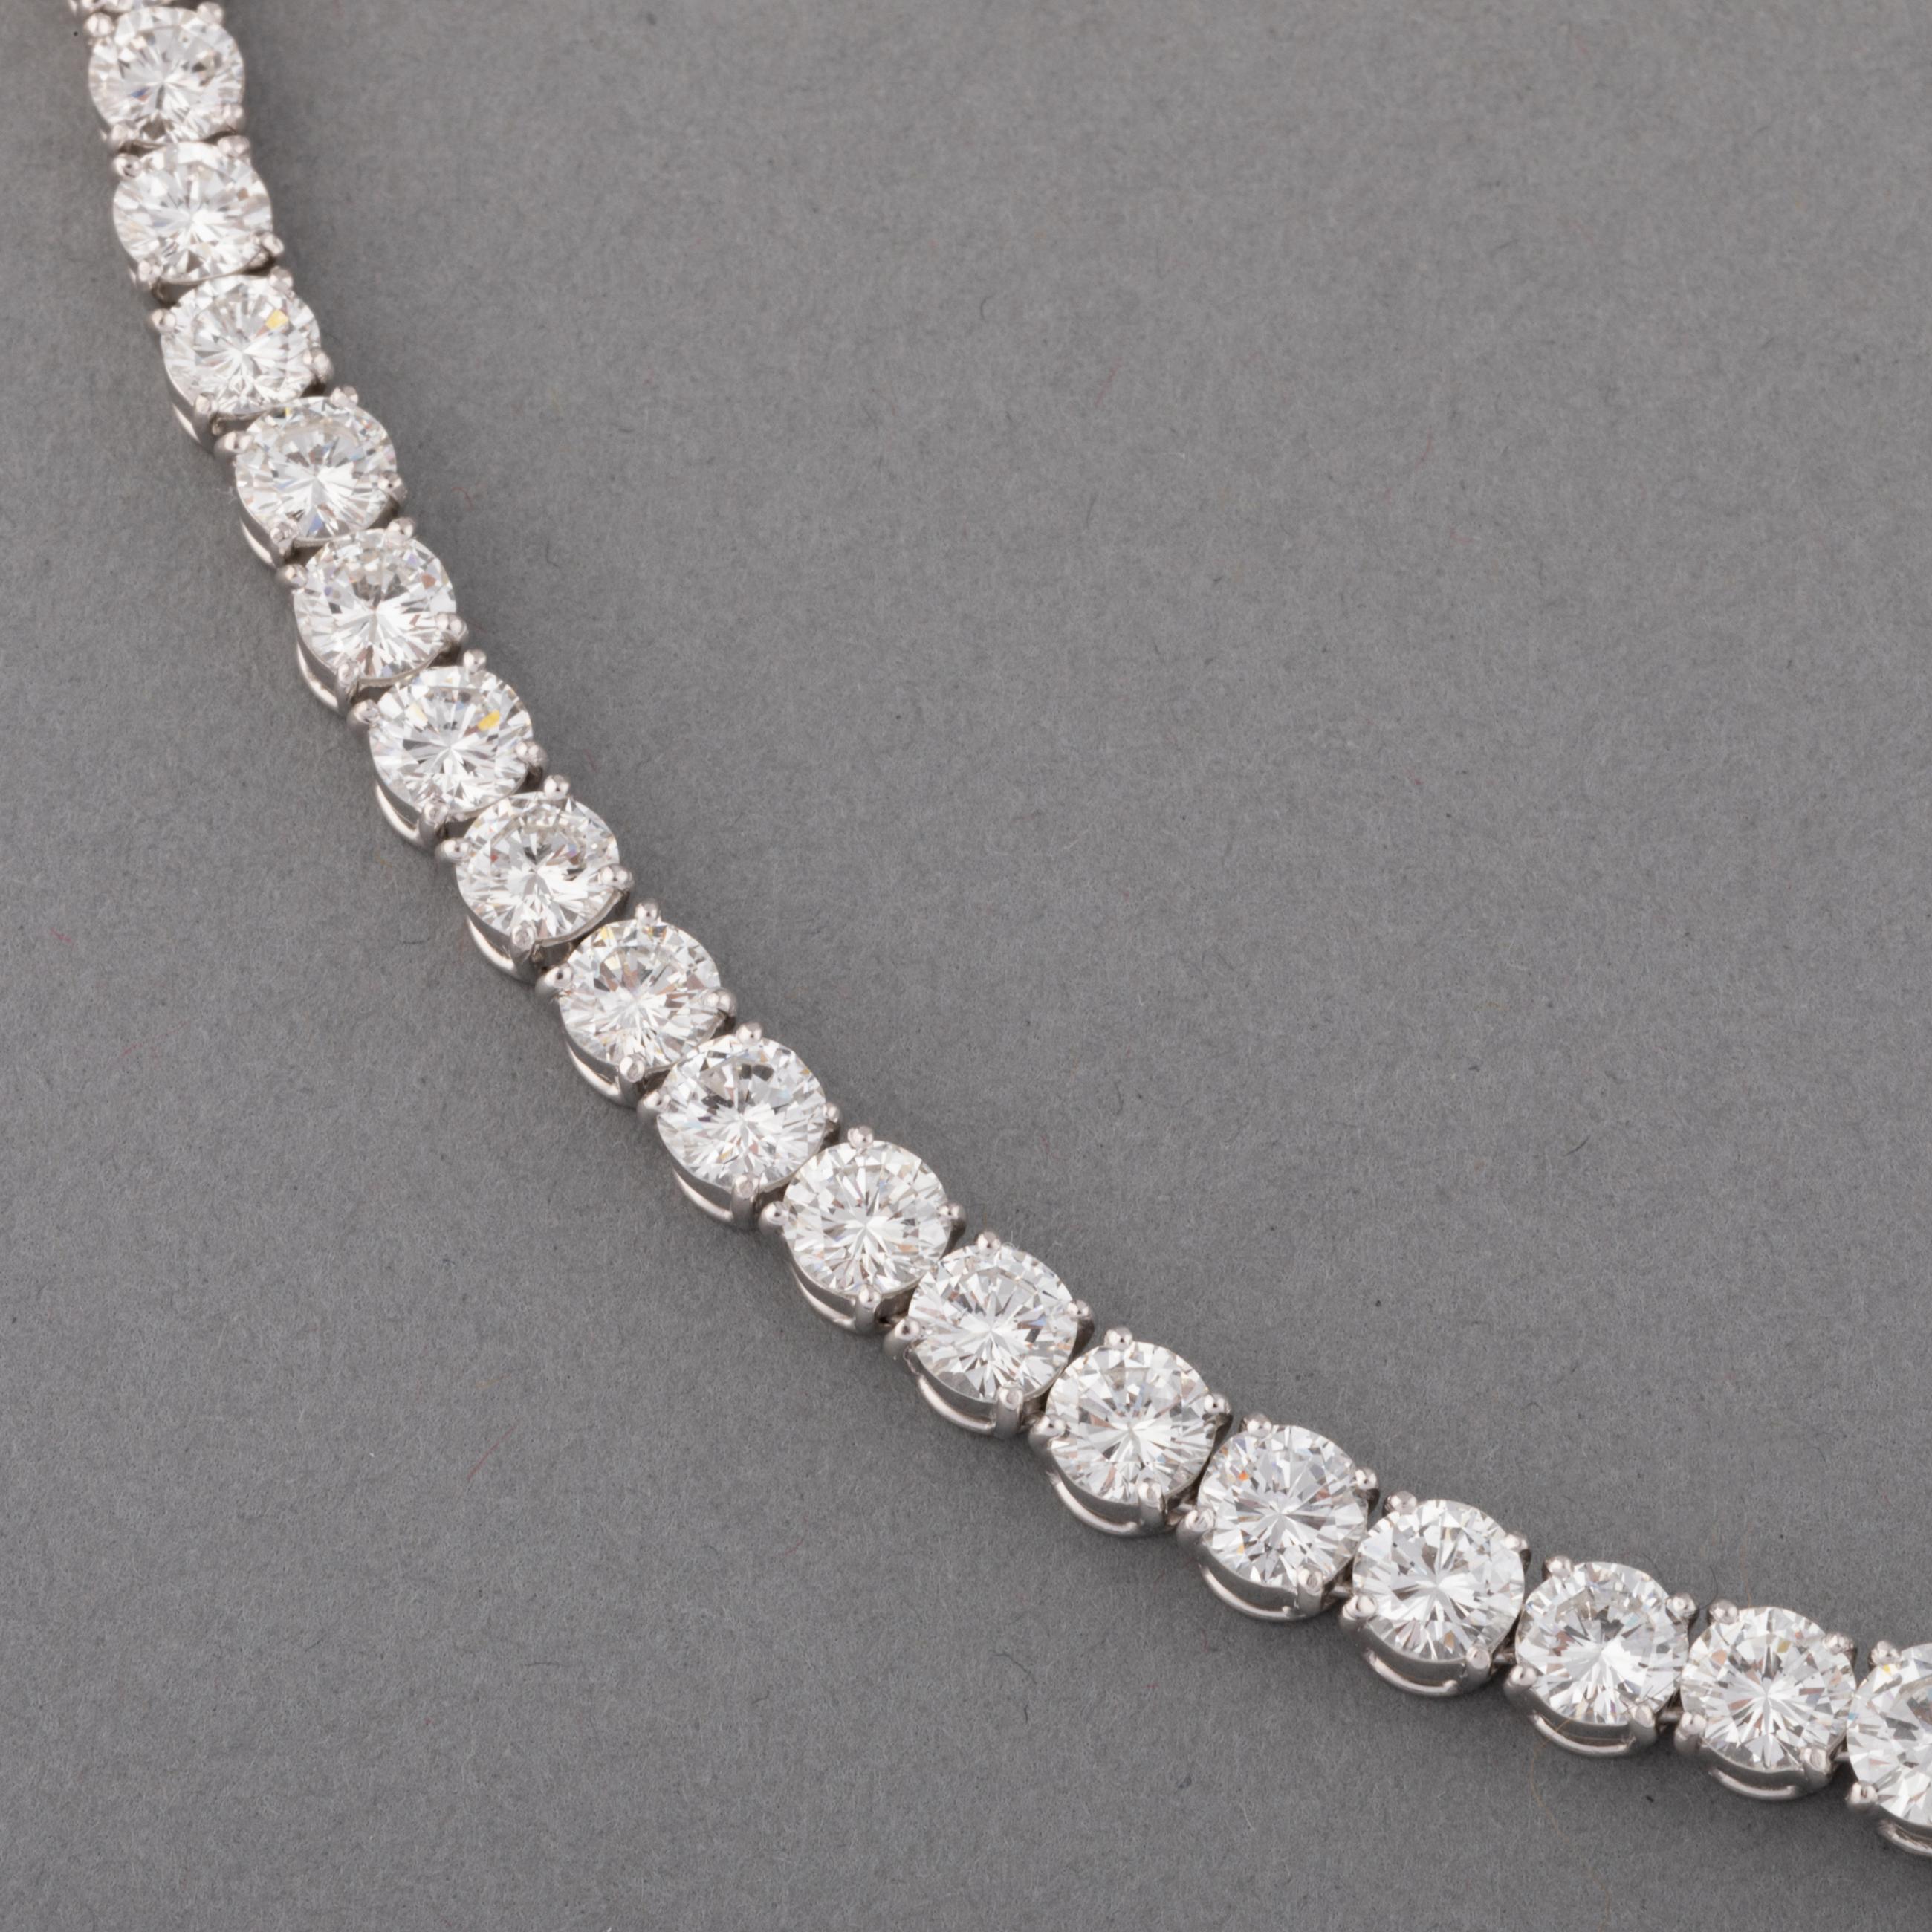 Brilliant Cut 24 Carats Diamonds Chaumet River Necklace For Sale